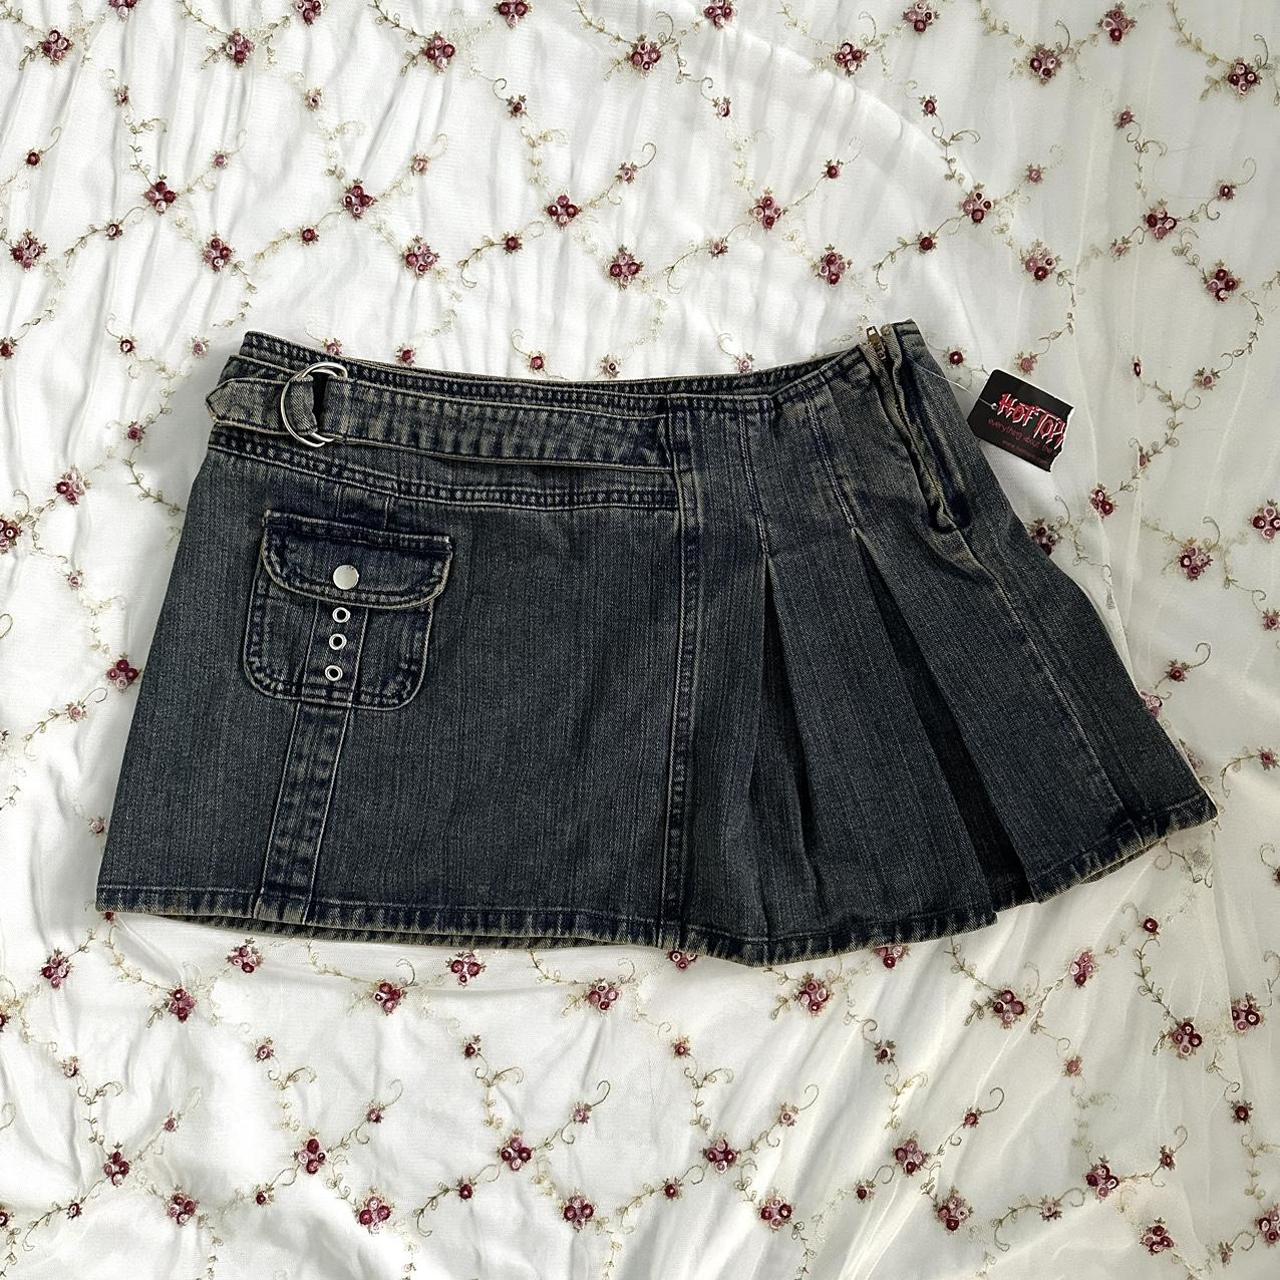 grunge y2k micro mini skirt amazing vintage... - Depop